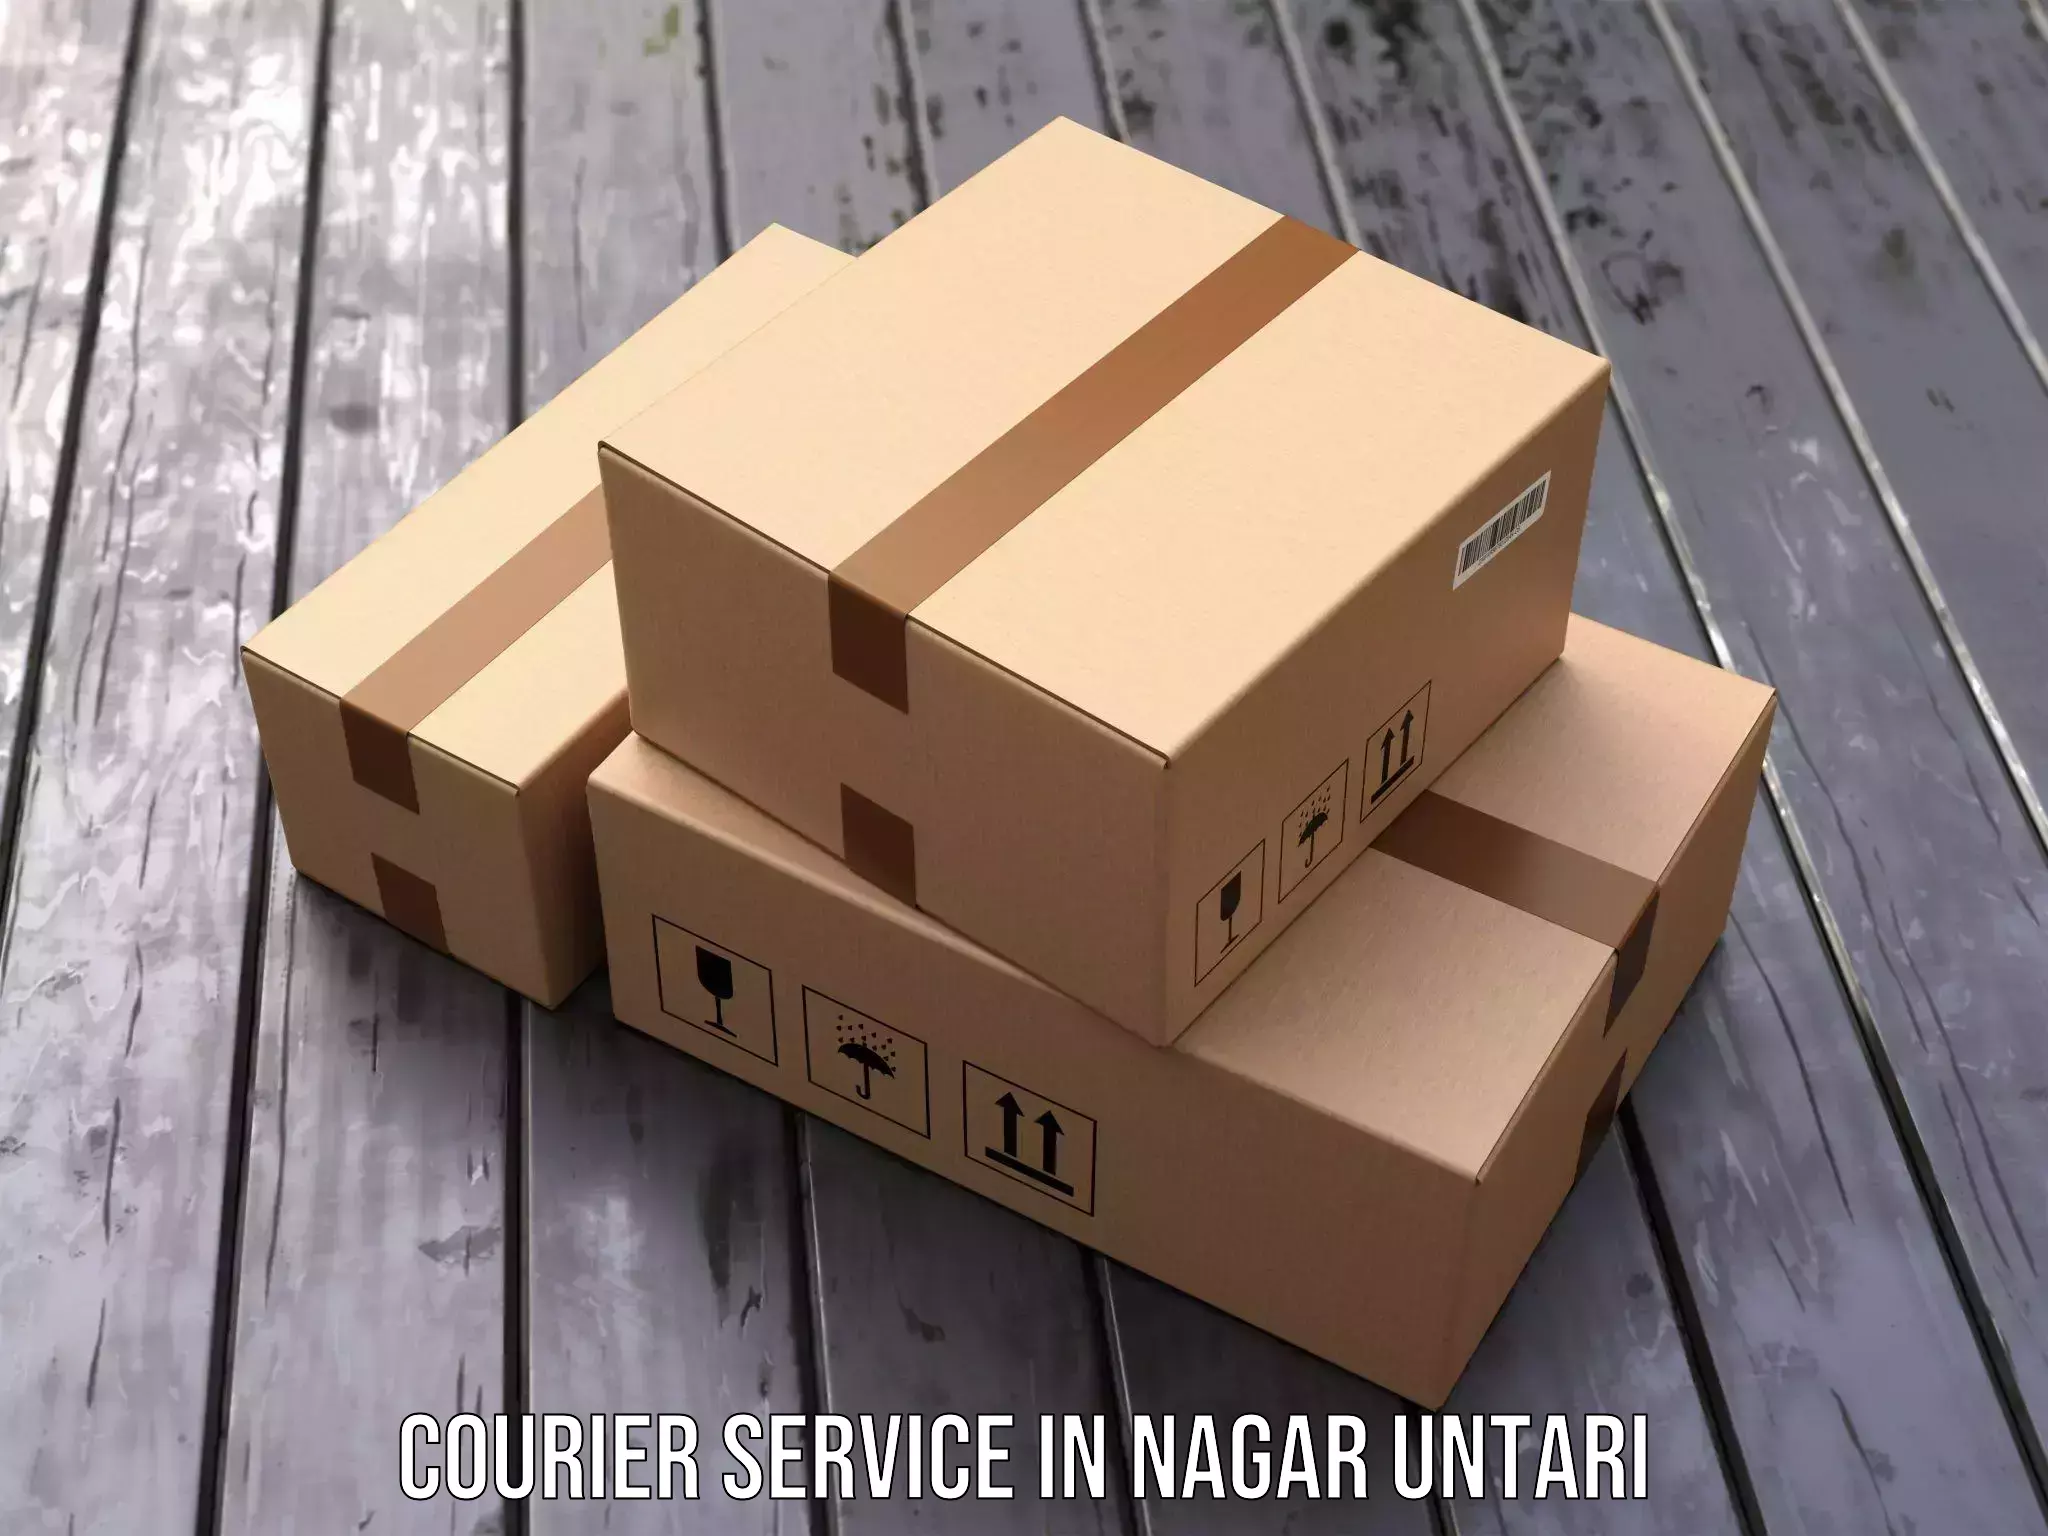 Flexible delivery scheduling in Nagar Untari